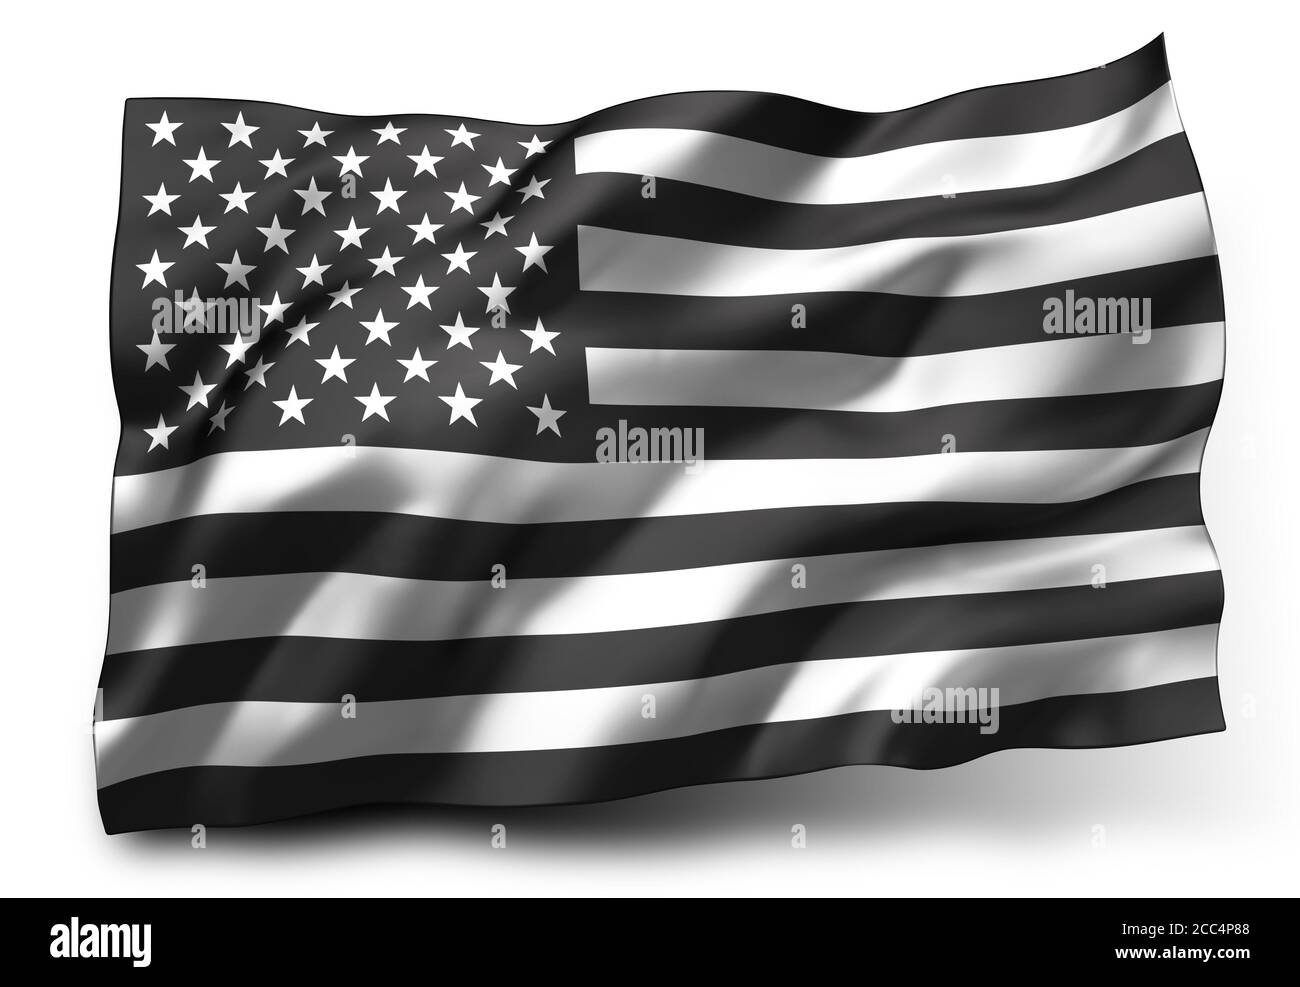 Vite nere la bandiera della materia soffia nel vento. Bandiera a strisce bianche e nere degli Stati Uniti, isolata su sfondo bianco. Illustrazione 3D. Foto Stock